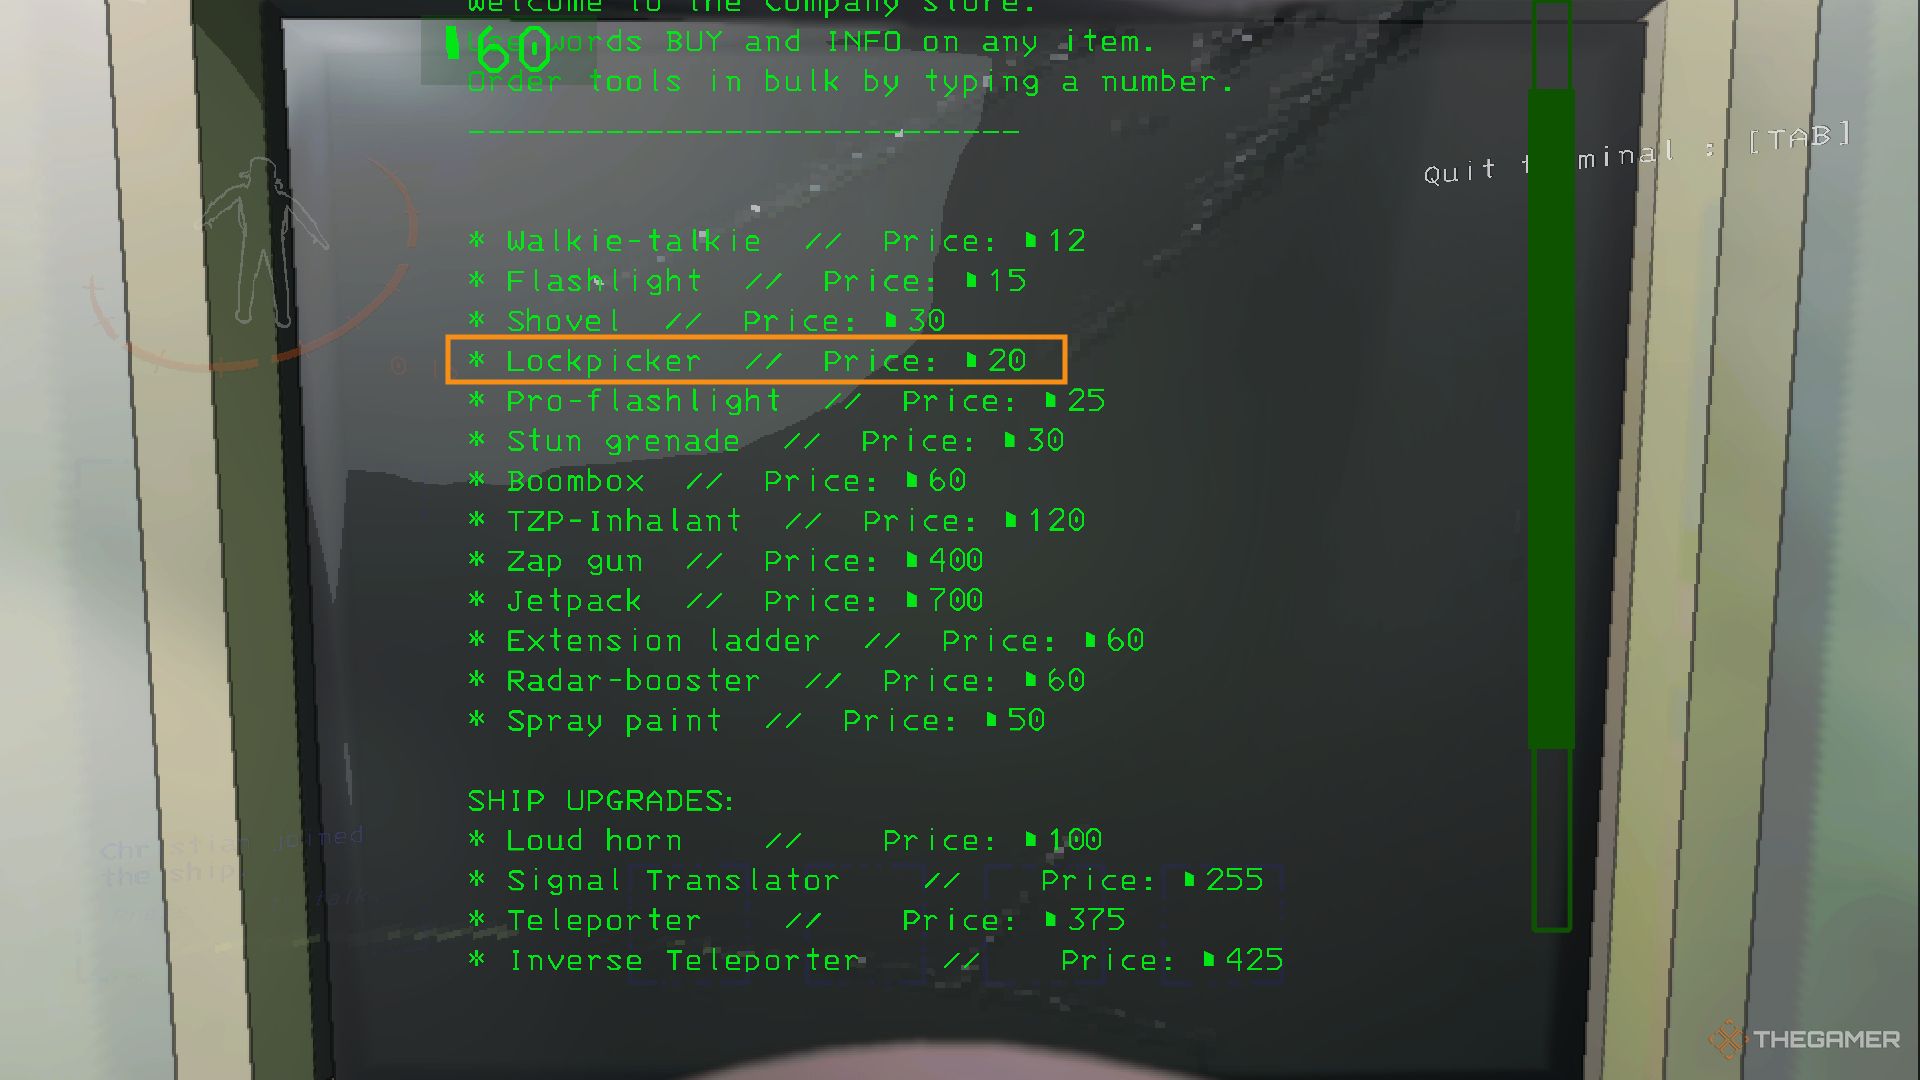 Une capture d'écran de Lethal Company montrant la boutique intégrée dans le Terminal, avec l'élément Lockpicker mis en évidence dans une boîte orange pour un prix de 20 crédits.